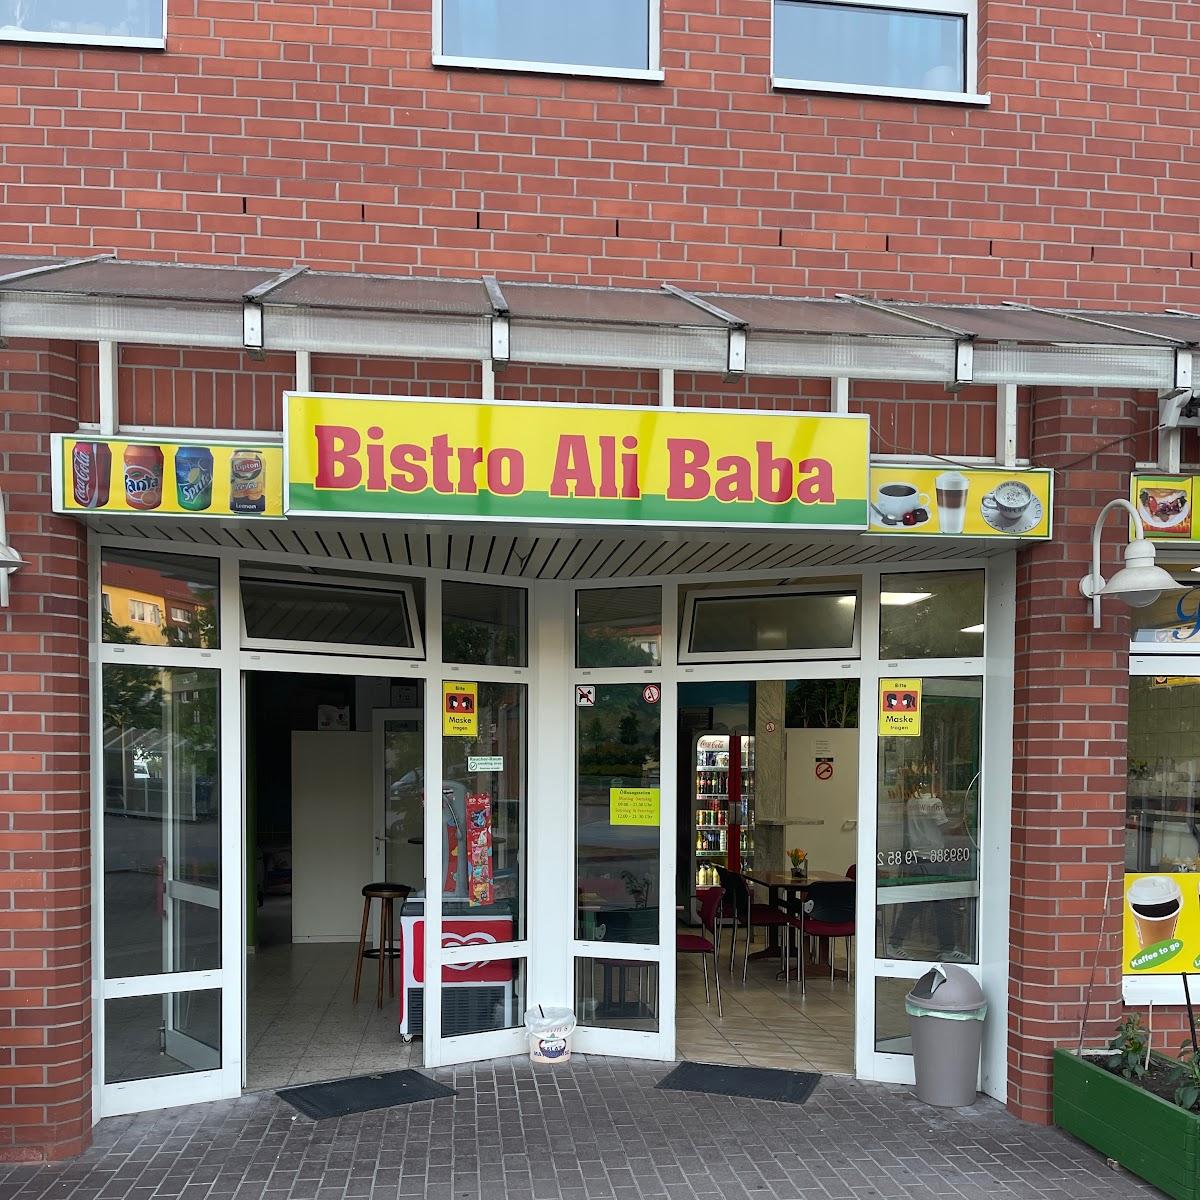 Restaurant "Bistro Ali Baba" in Seehausen (Altmark)